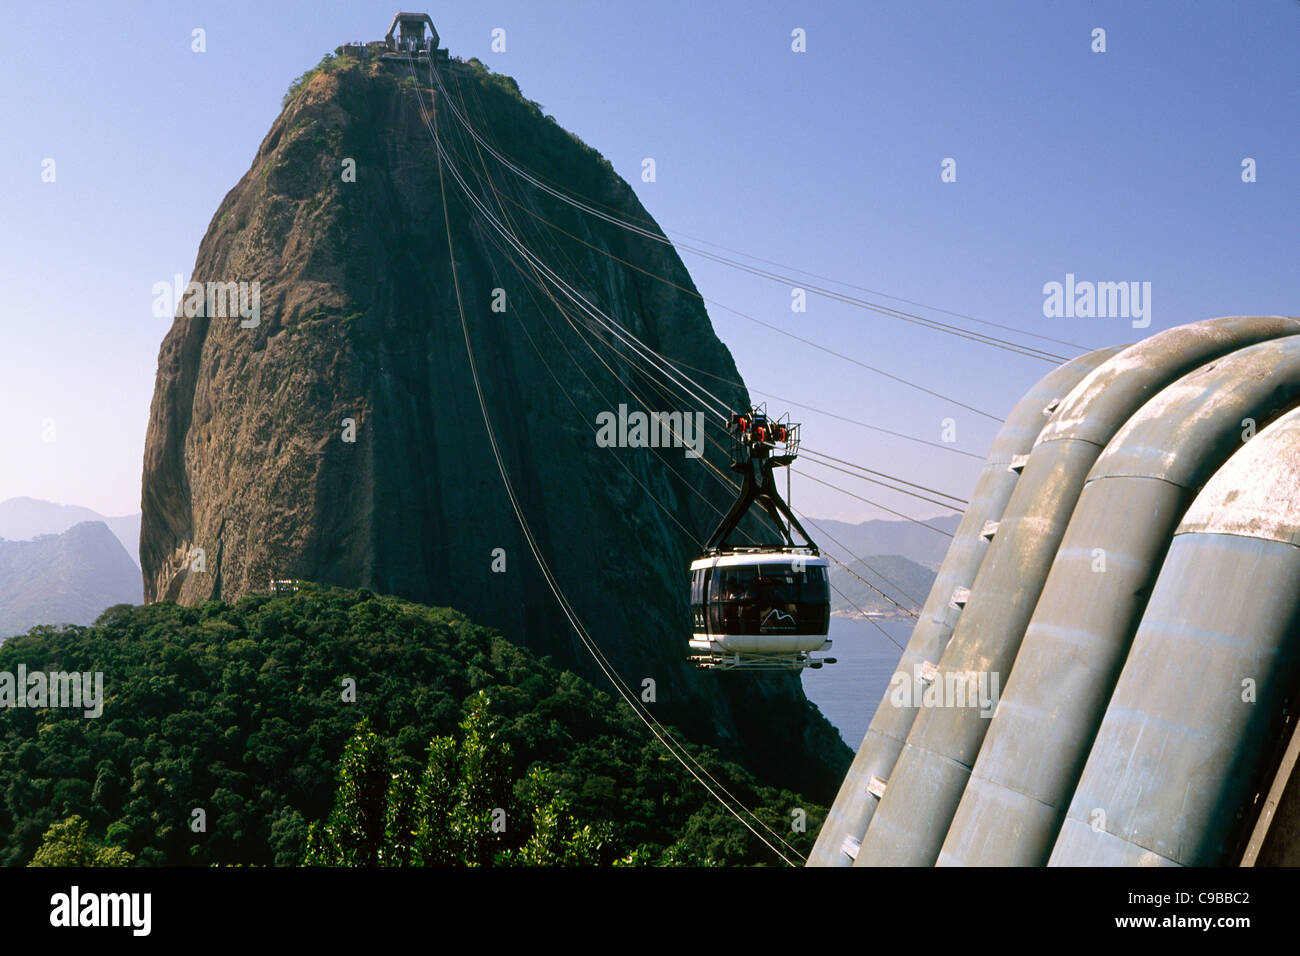 Basso Angolo di visione di un cavo discendente auto, Sugarloaf Mountain, Rio de Janeiro, Brasile Foto Stock